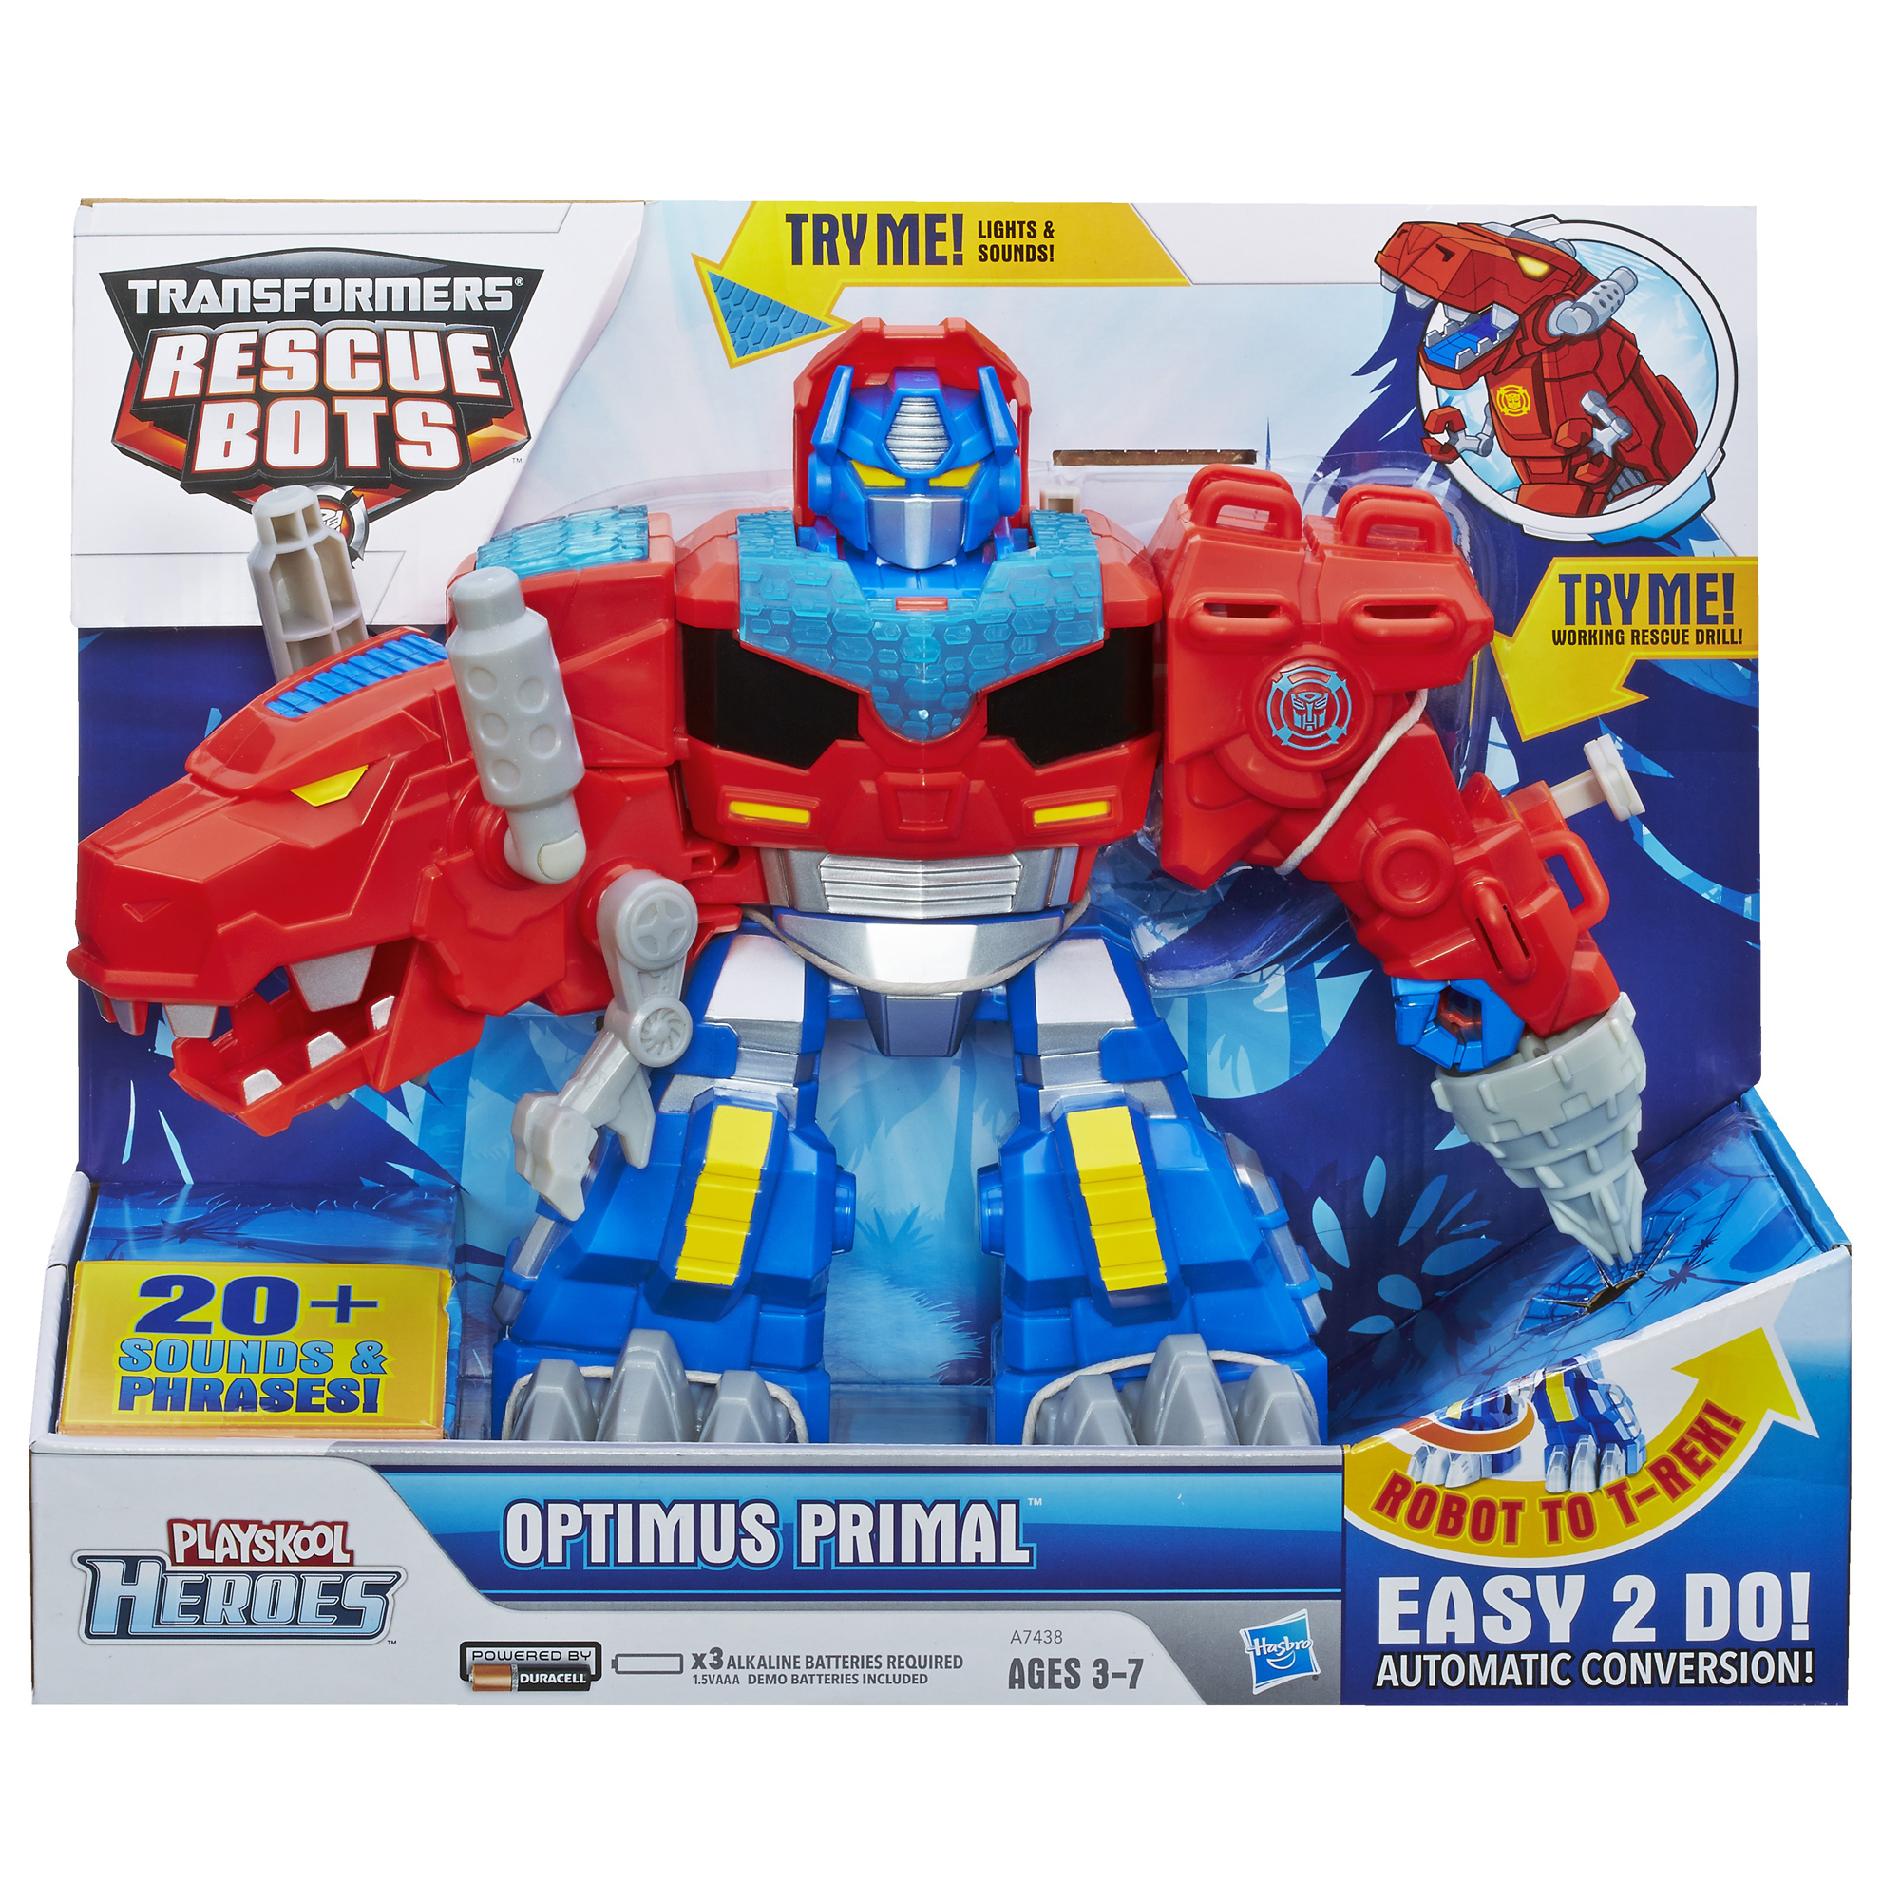 Playskool Heroes Transformers Rescue Bots Optimus Primal Figure   Toys